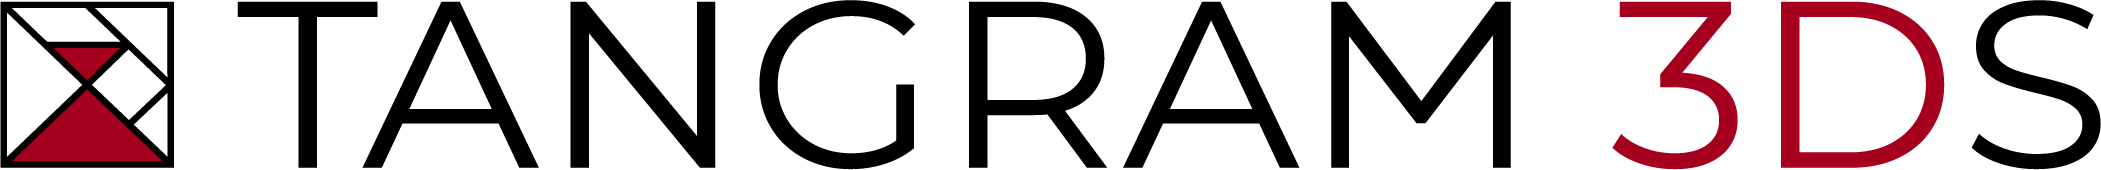 Tangram 3DS logo